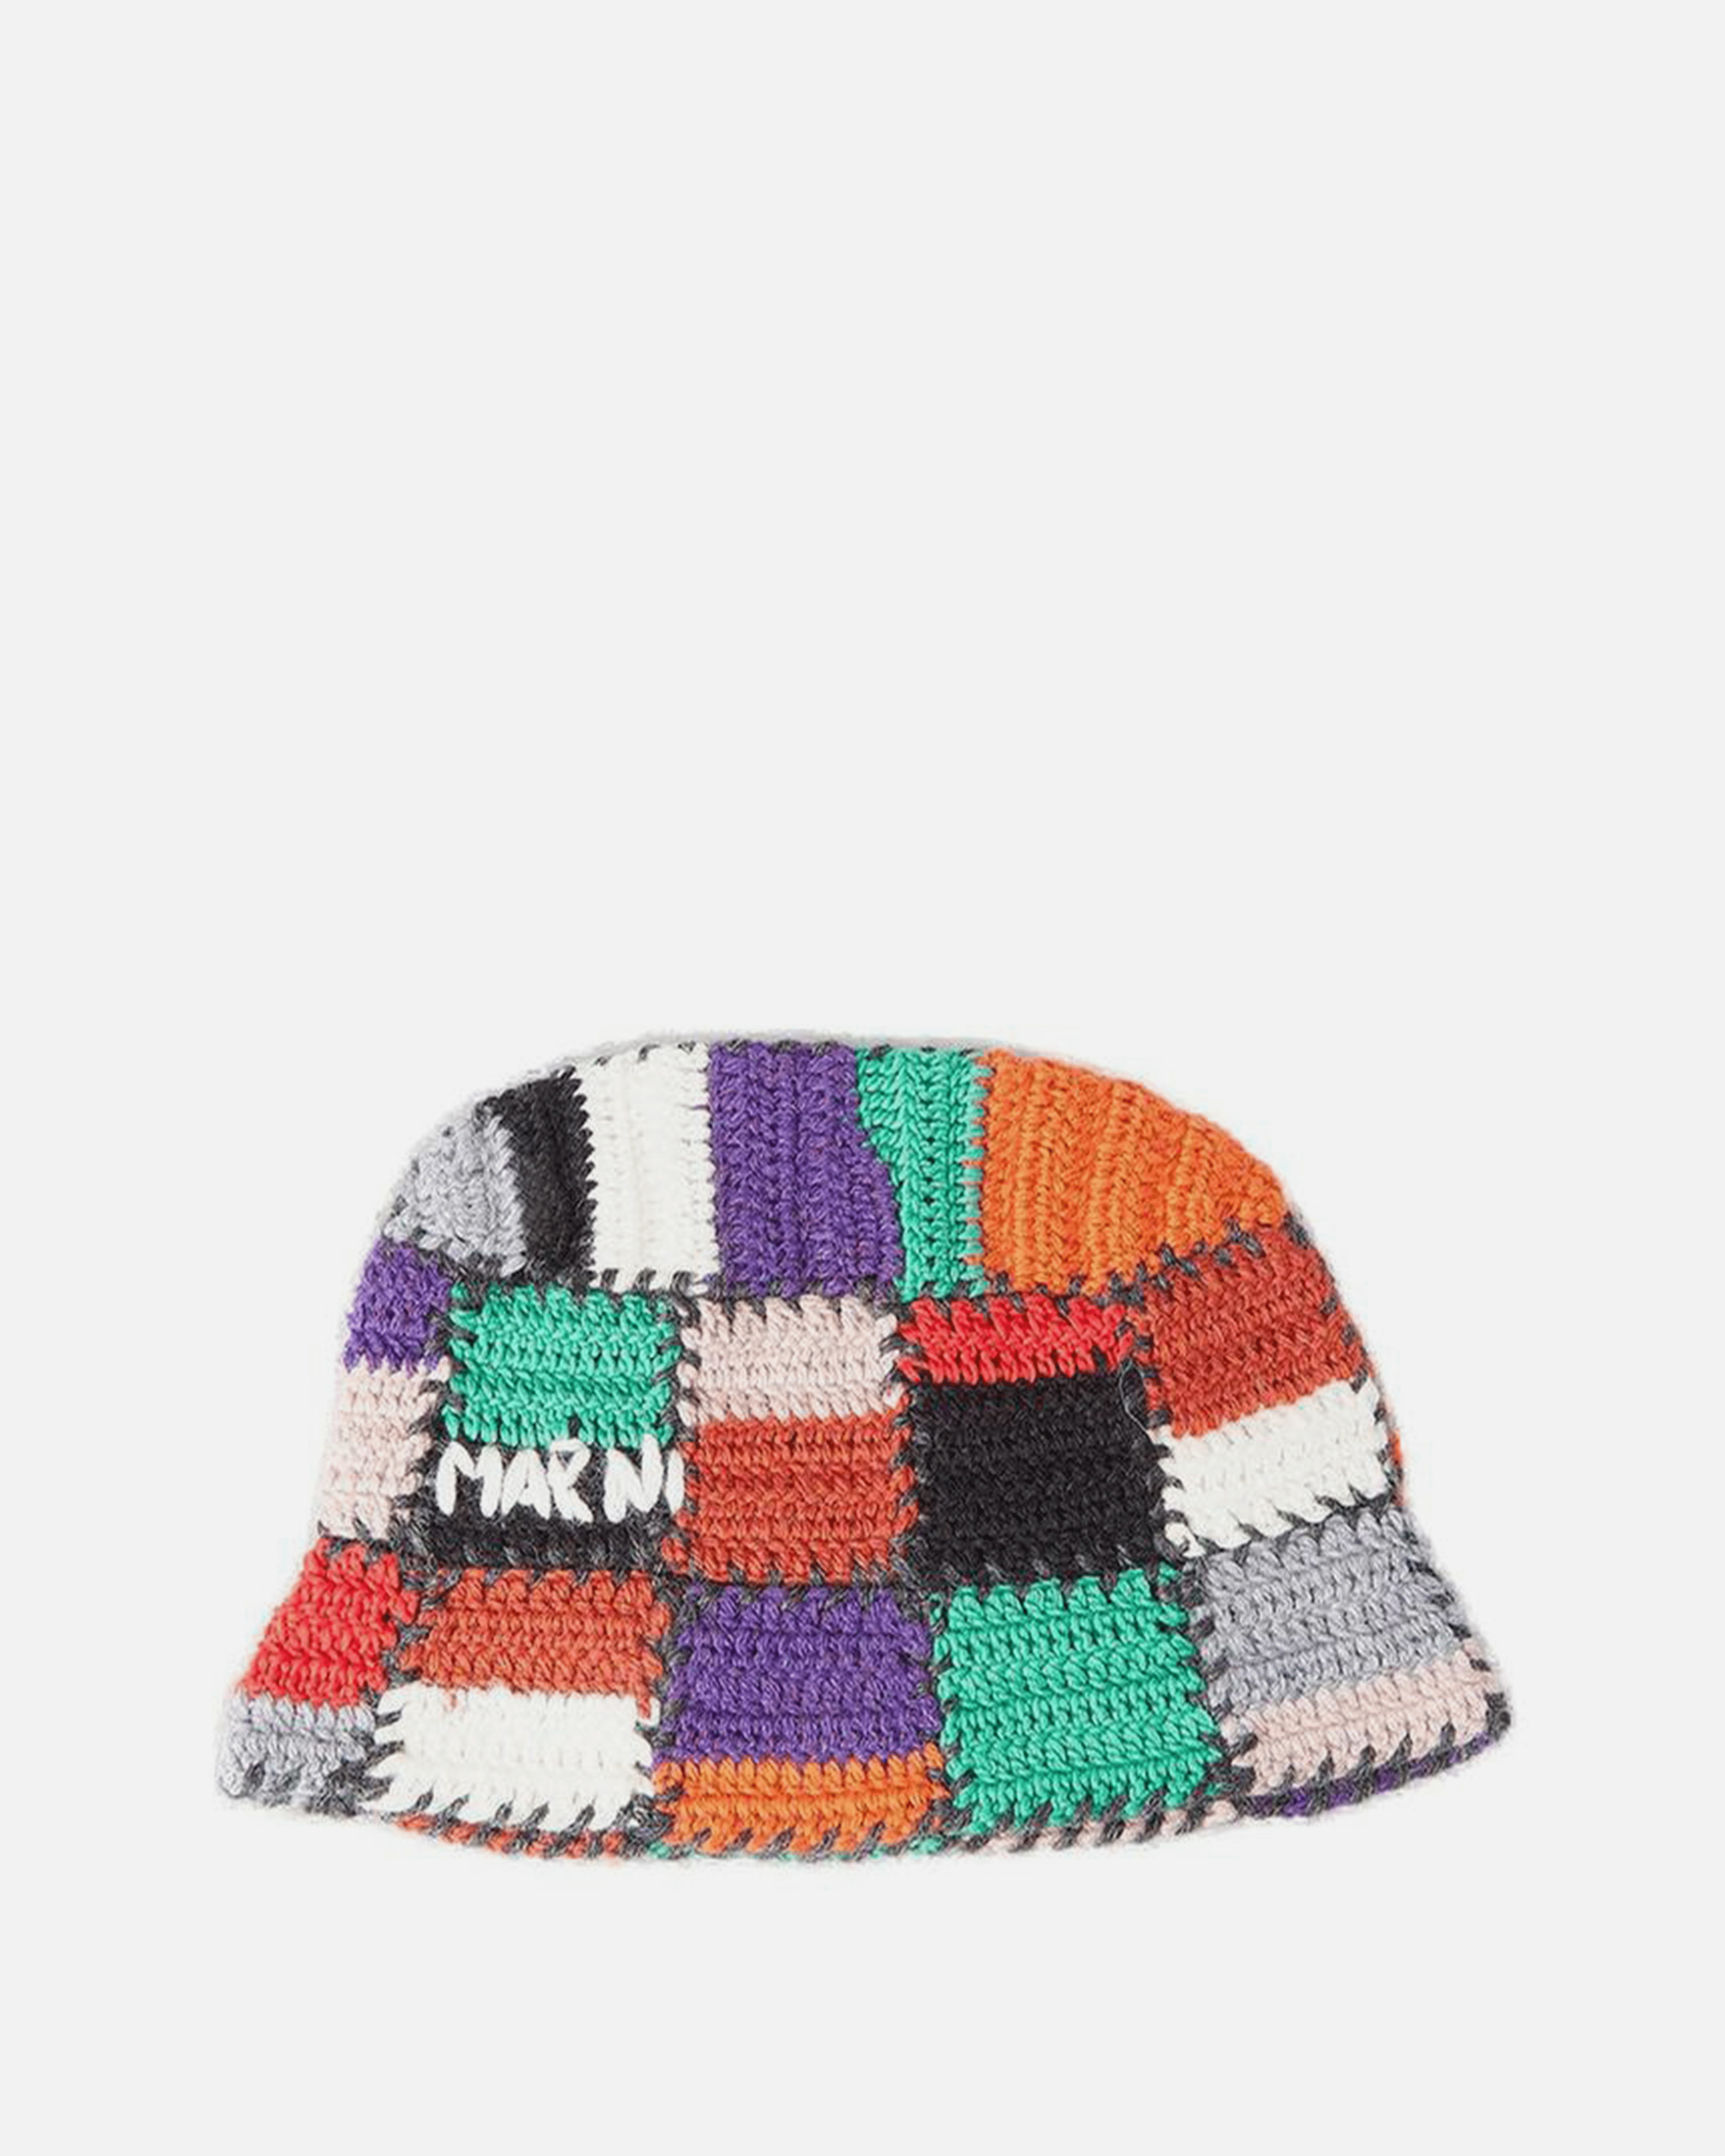 SVRN in Multi Hat – Crochet Bucket